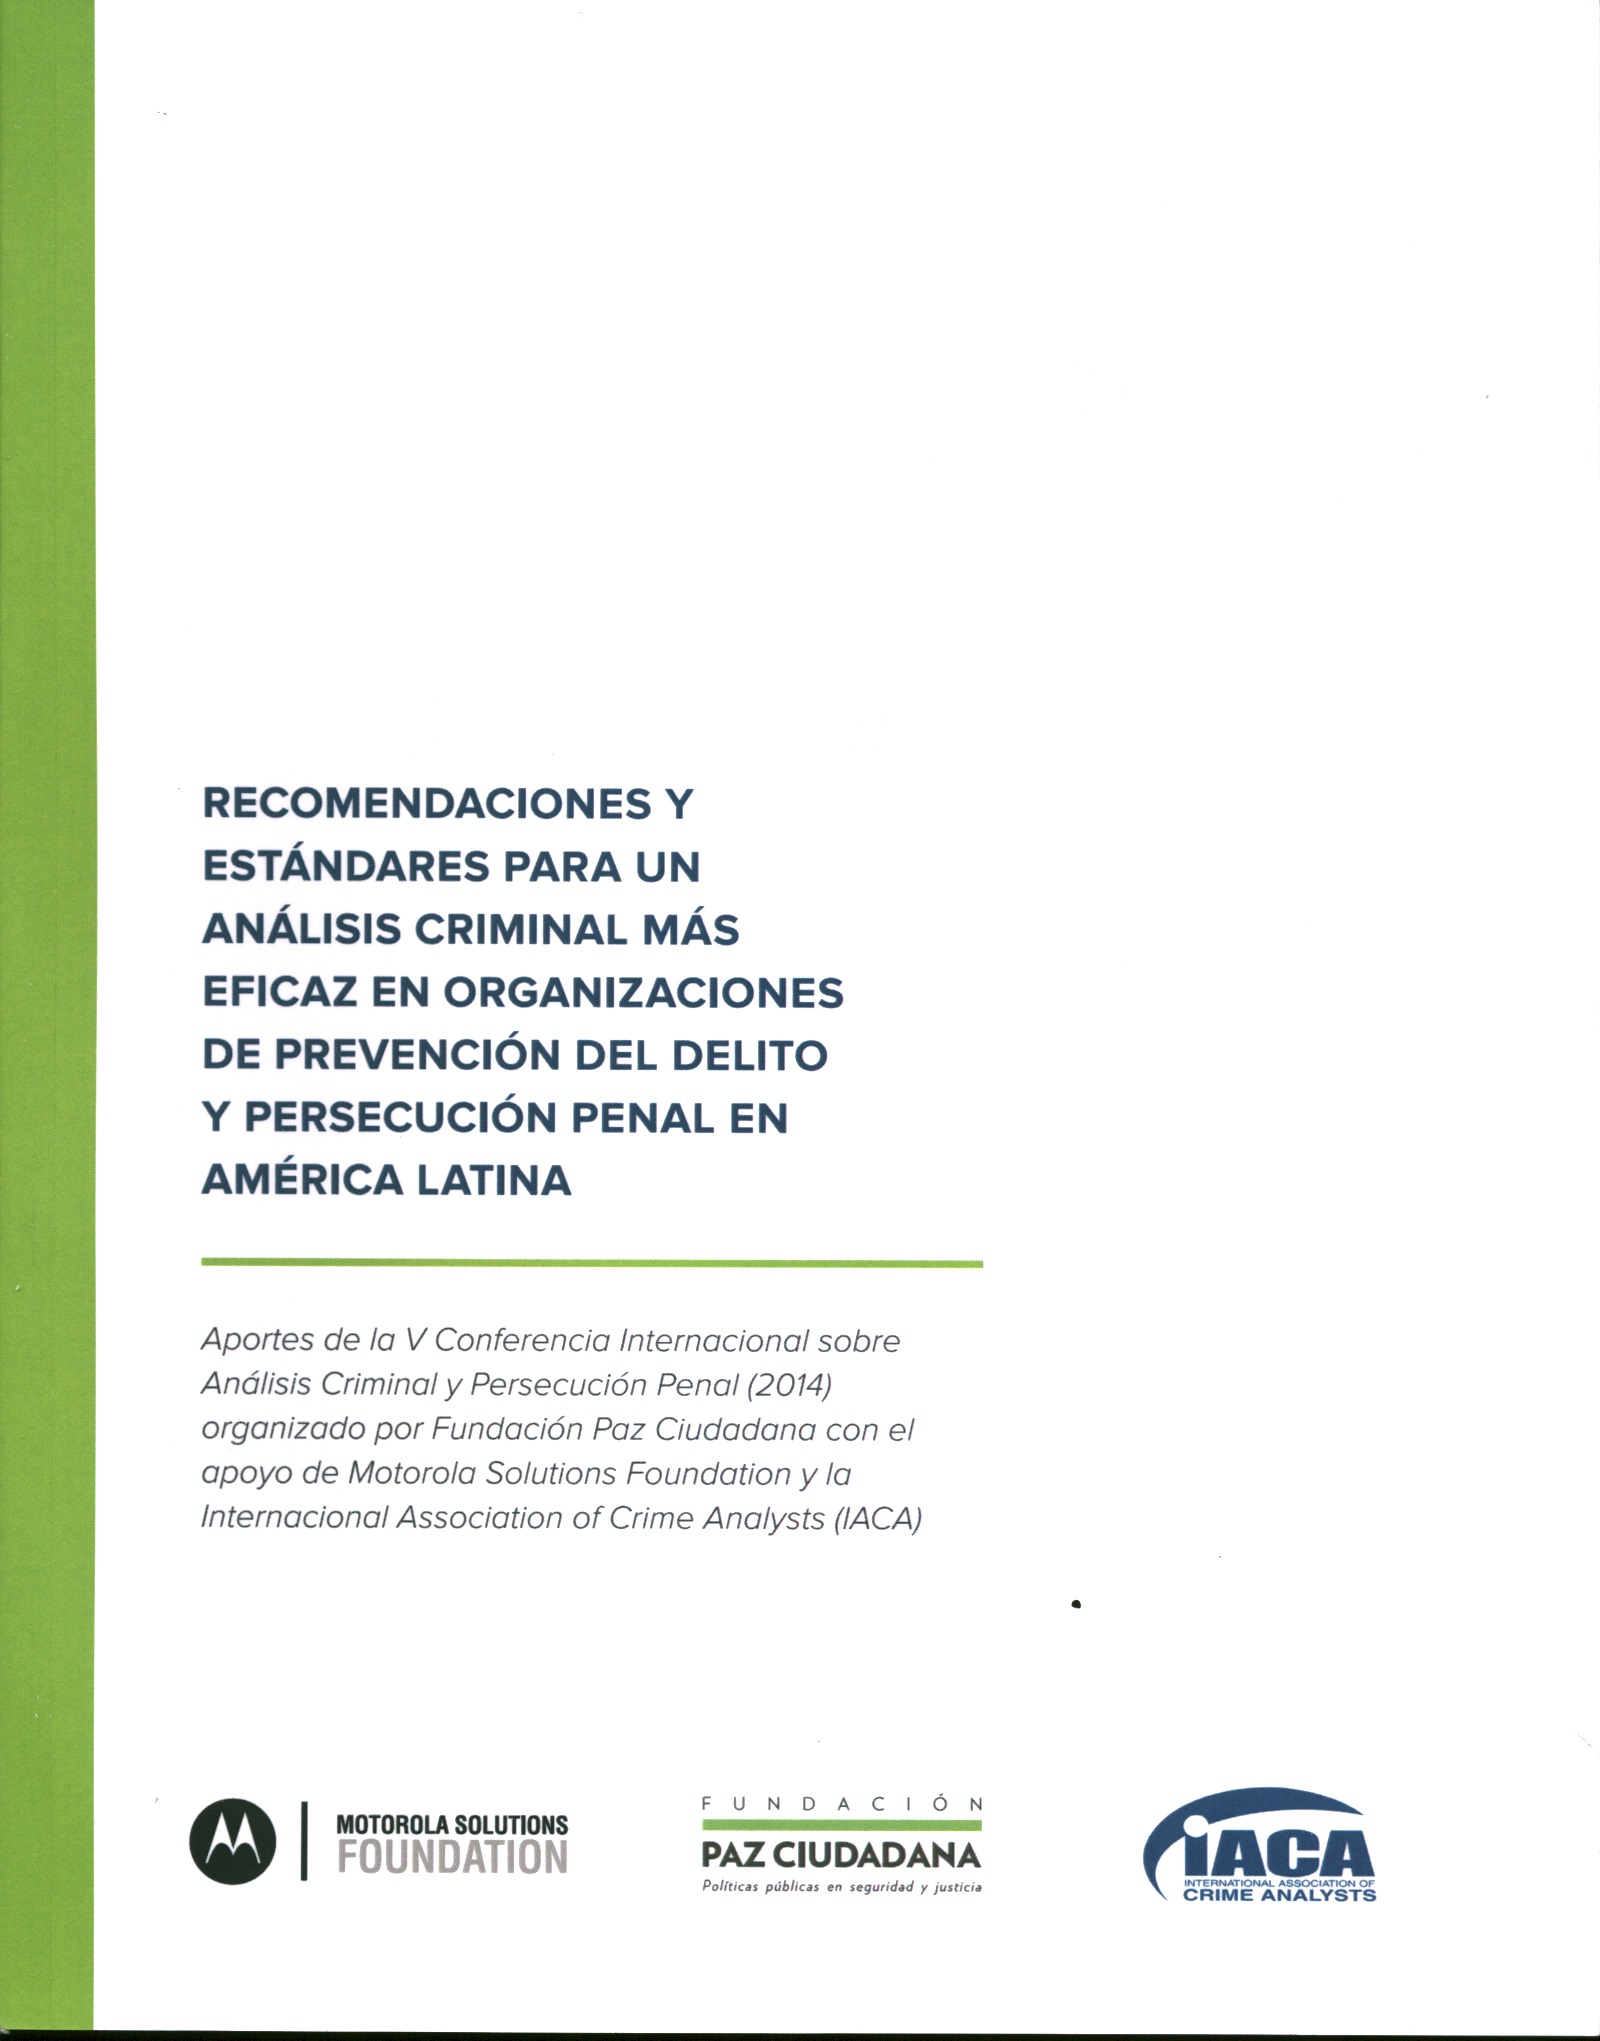 Recomendaciones y estándares para un análisis criminal más eficaz en organizaciones de prevención del delito y persecución penal en América Latina